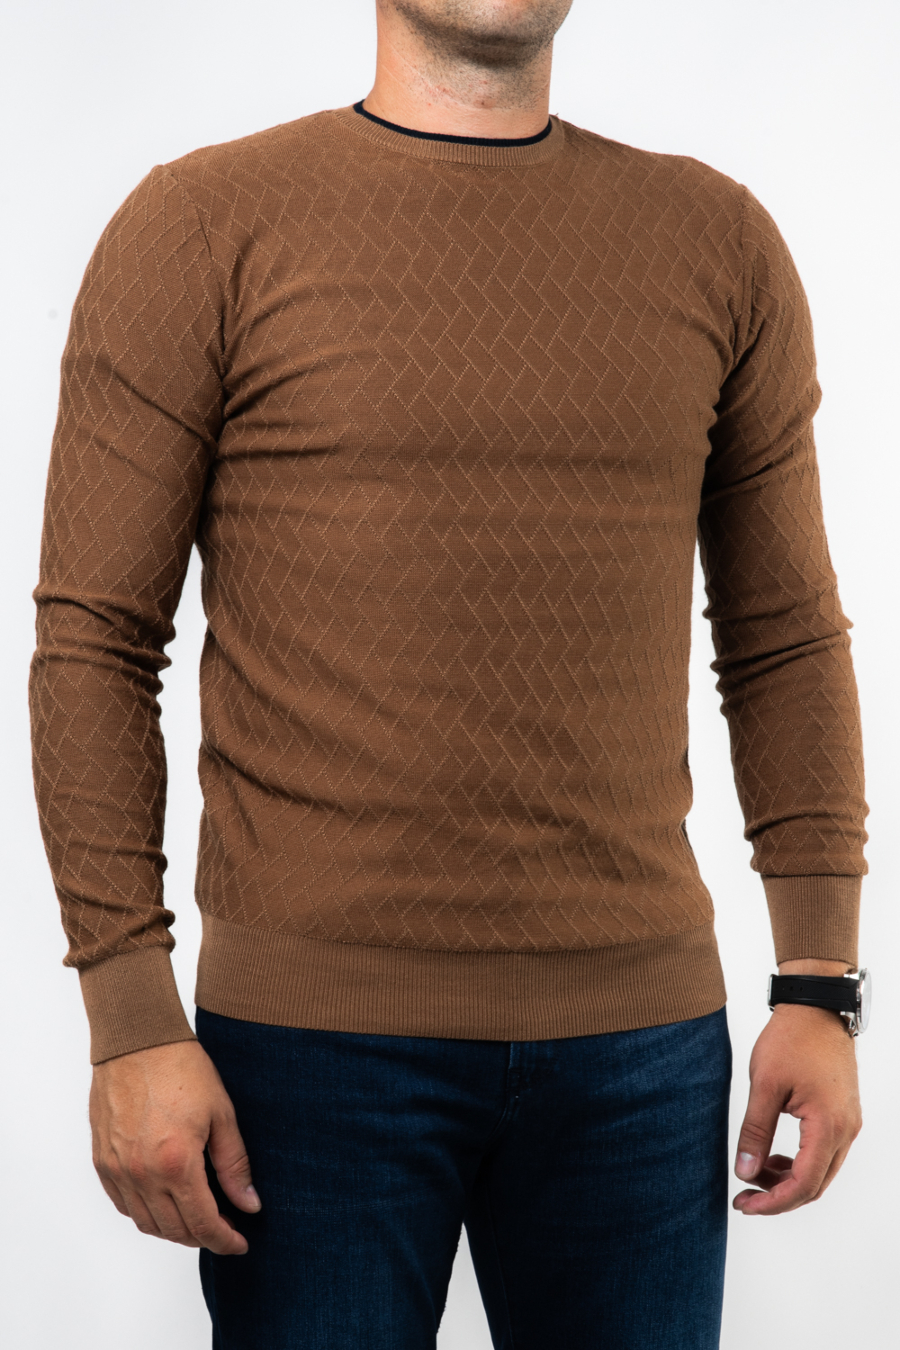 Moški pulover LX-W3-597, karamel